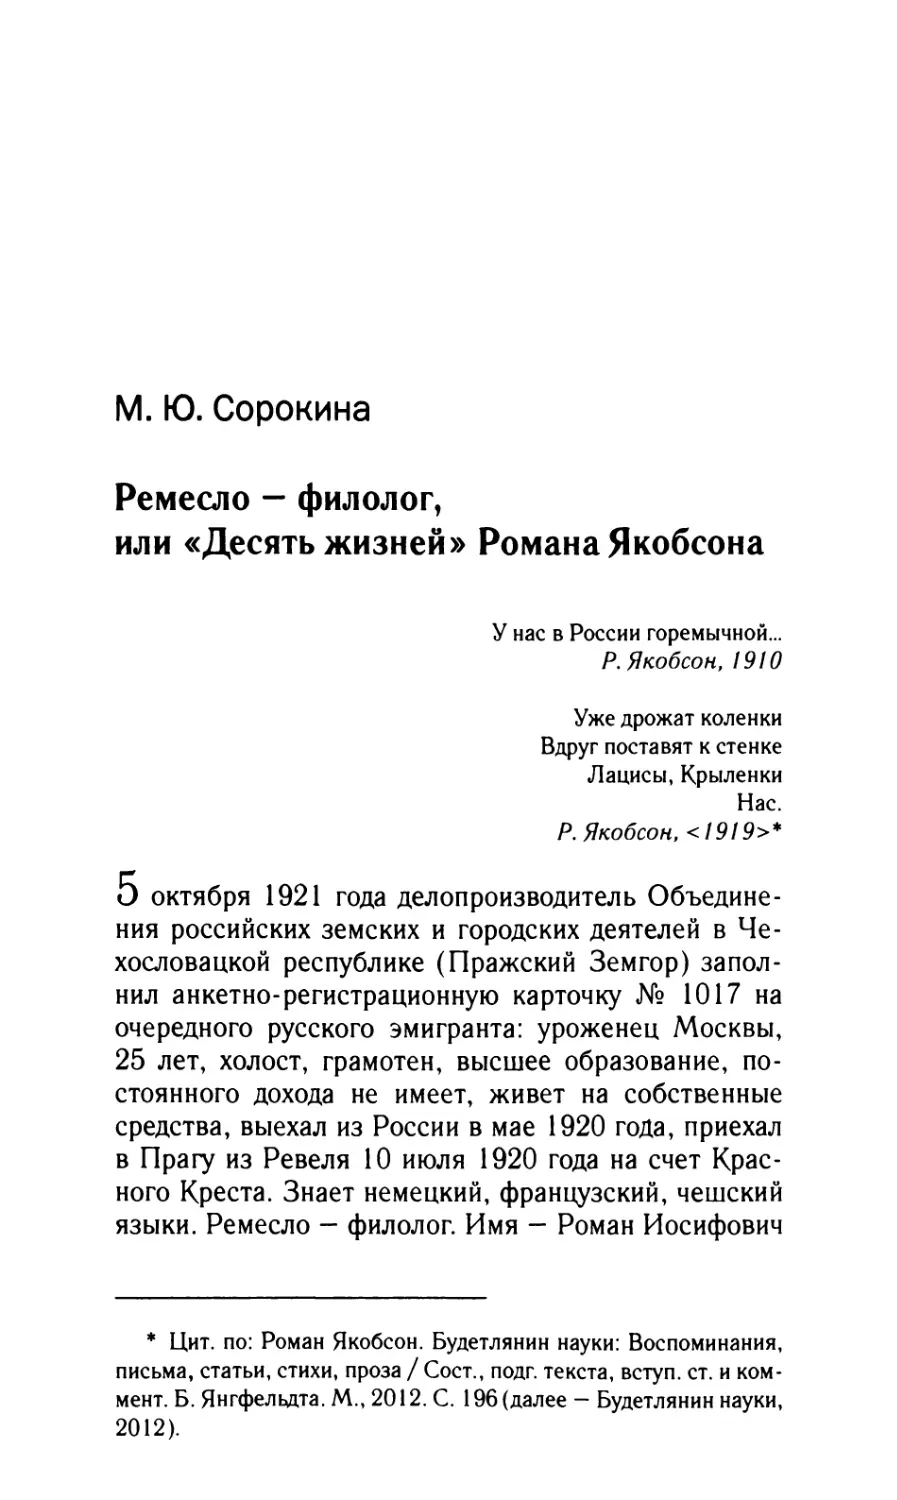 Сорокина М.Ю. Ремесло – филолог, или «Десять жизней» Романа Якобсона